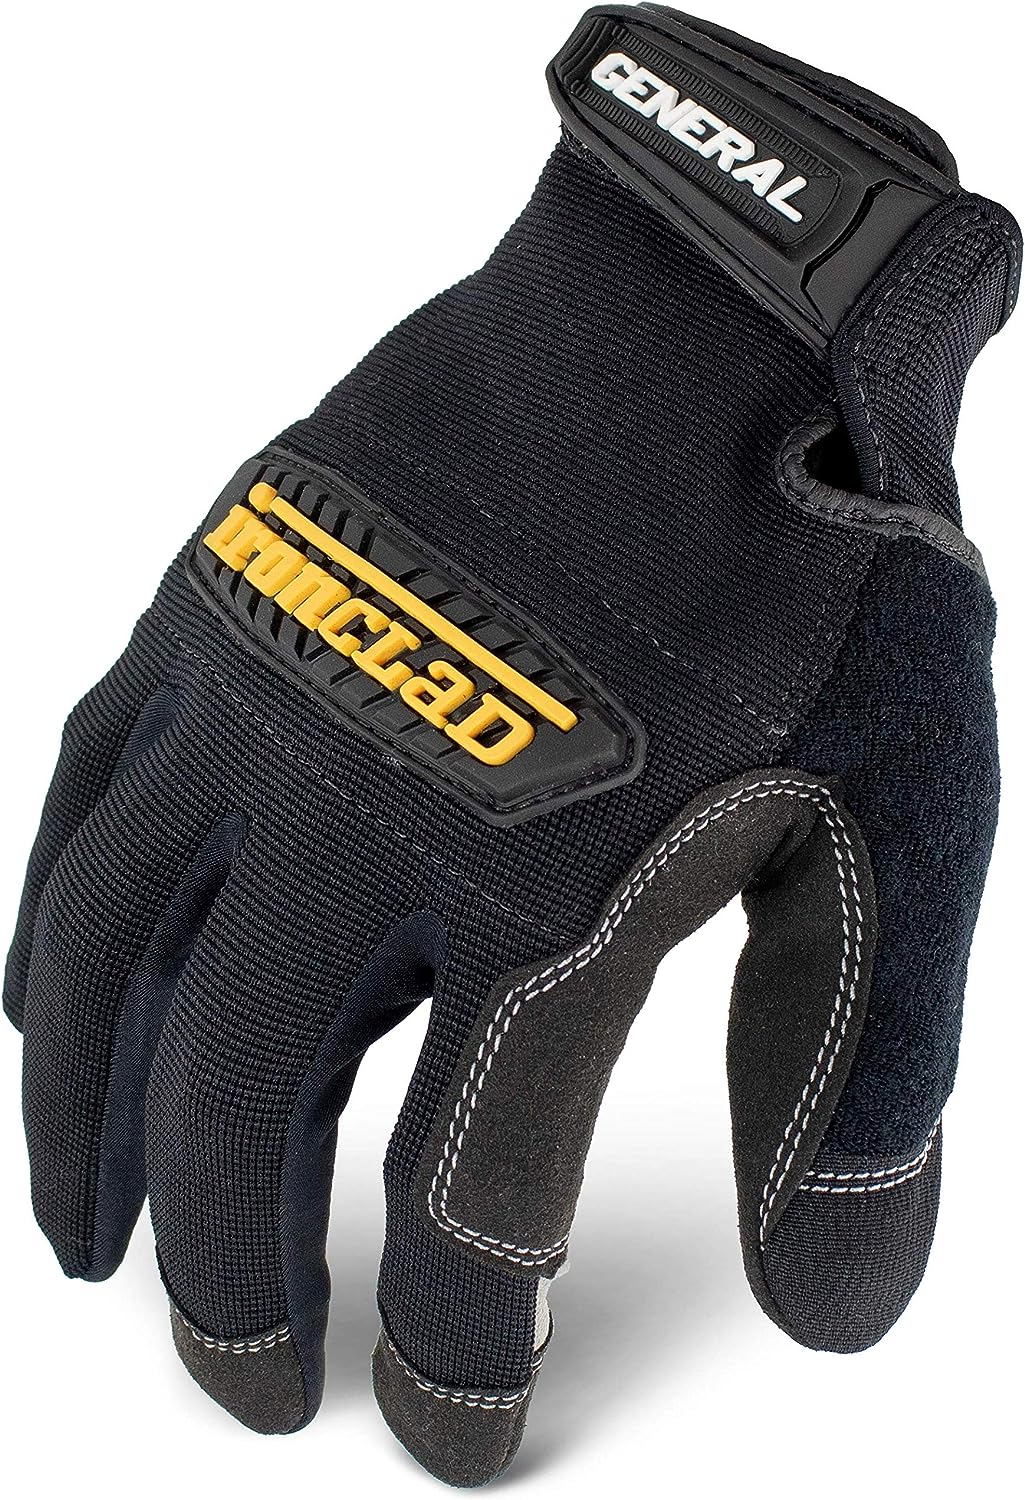 best work gloves for men